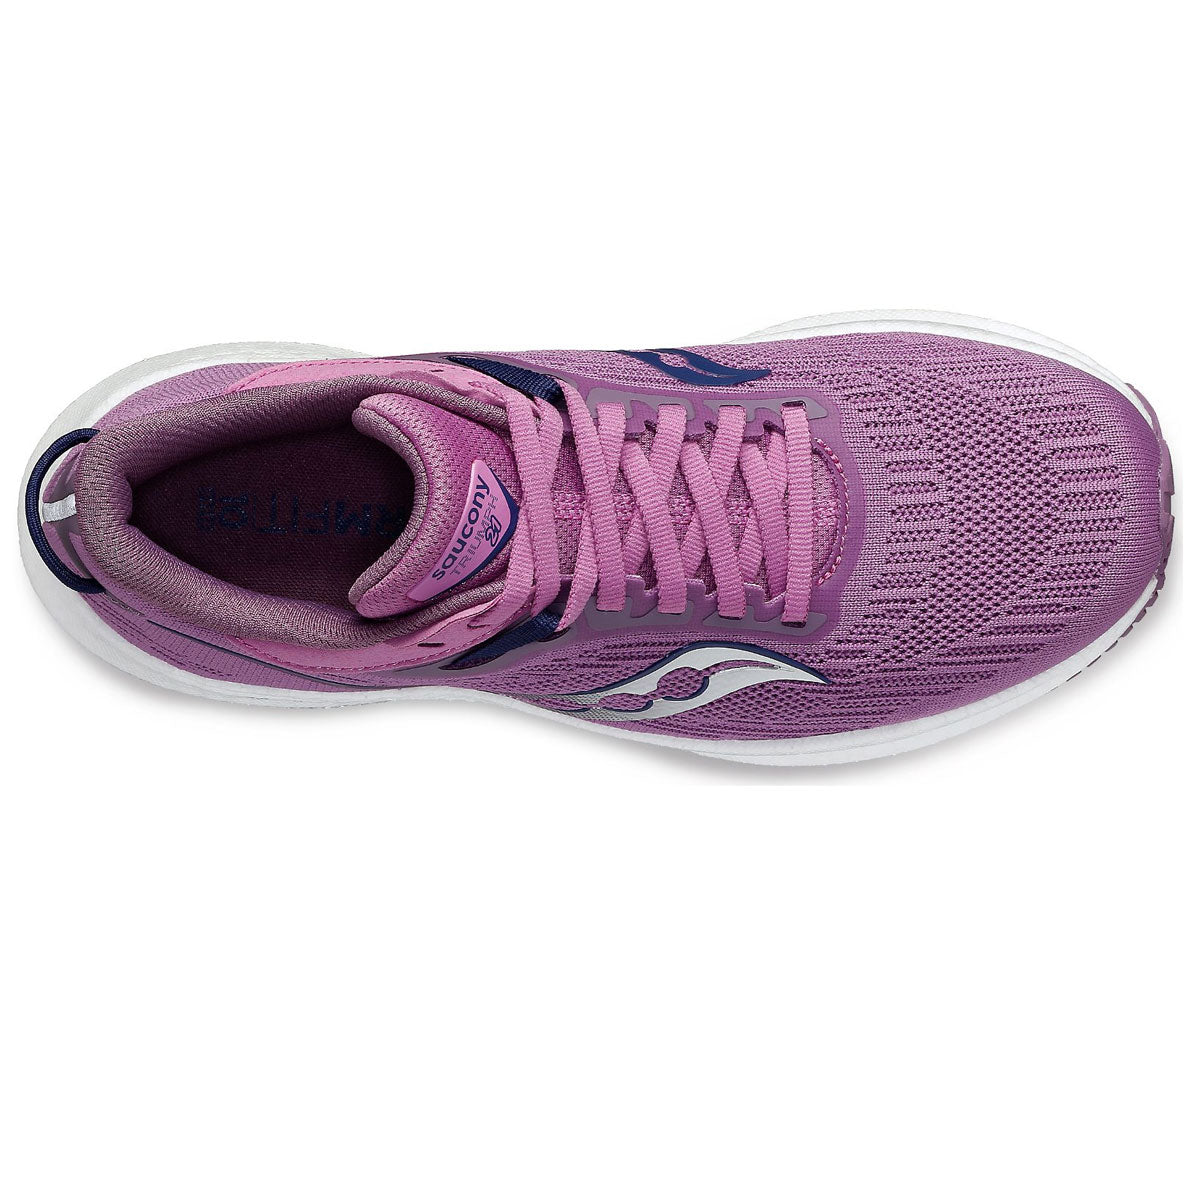 Saucony Triumph 21 Running Shoes - Womens - Grape/Indigo